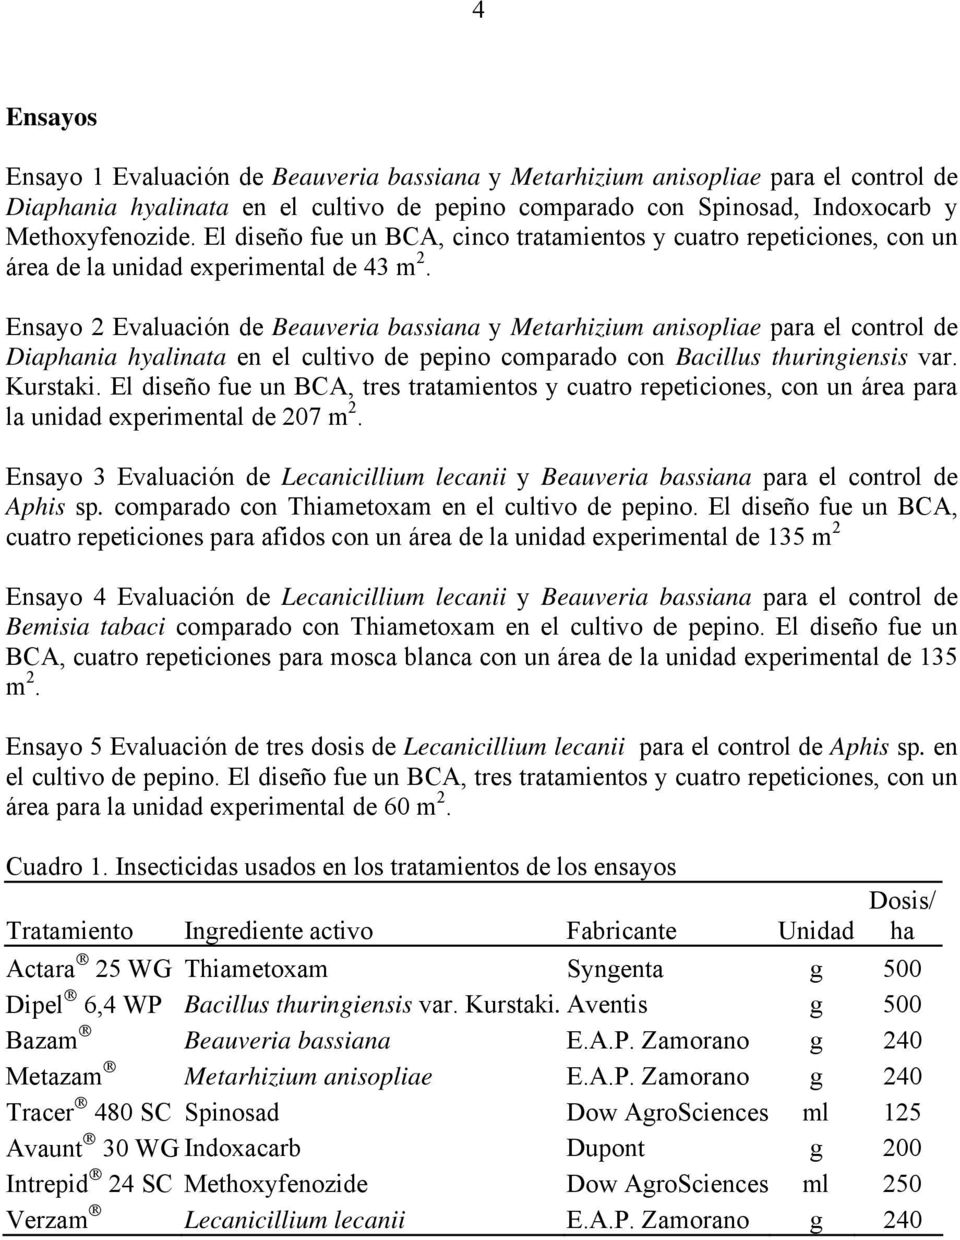 Ensayo 2 Evaluación de Beauveria bassiana y Metarhizium anisopliae para el control de Diaphania hyalinata en el cultivo de pepino comparado con Bacillus thuringiensis var. Kurstaki.